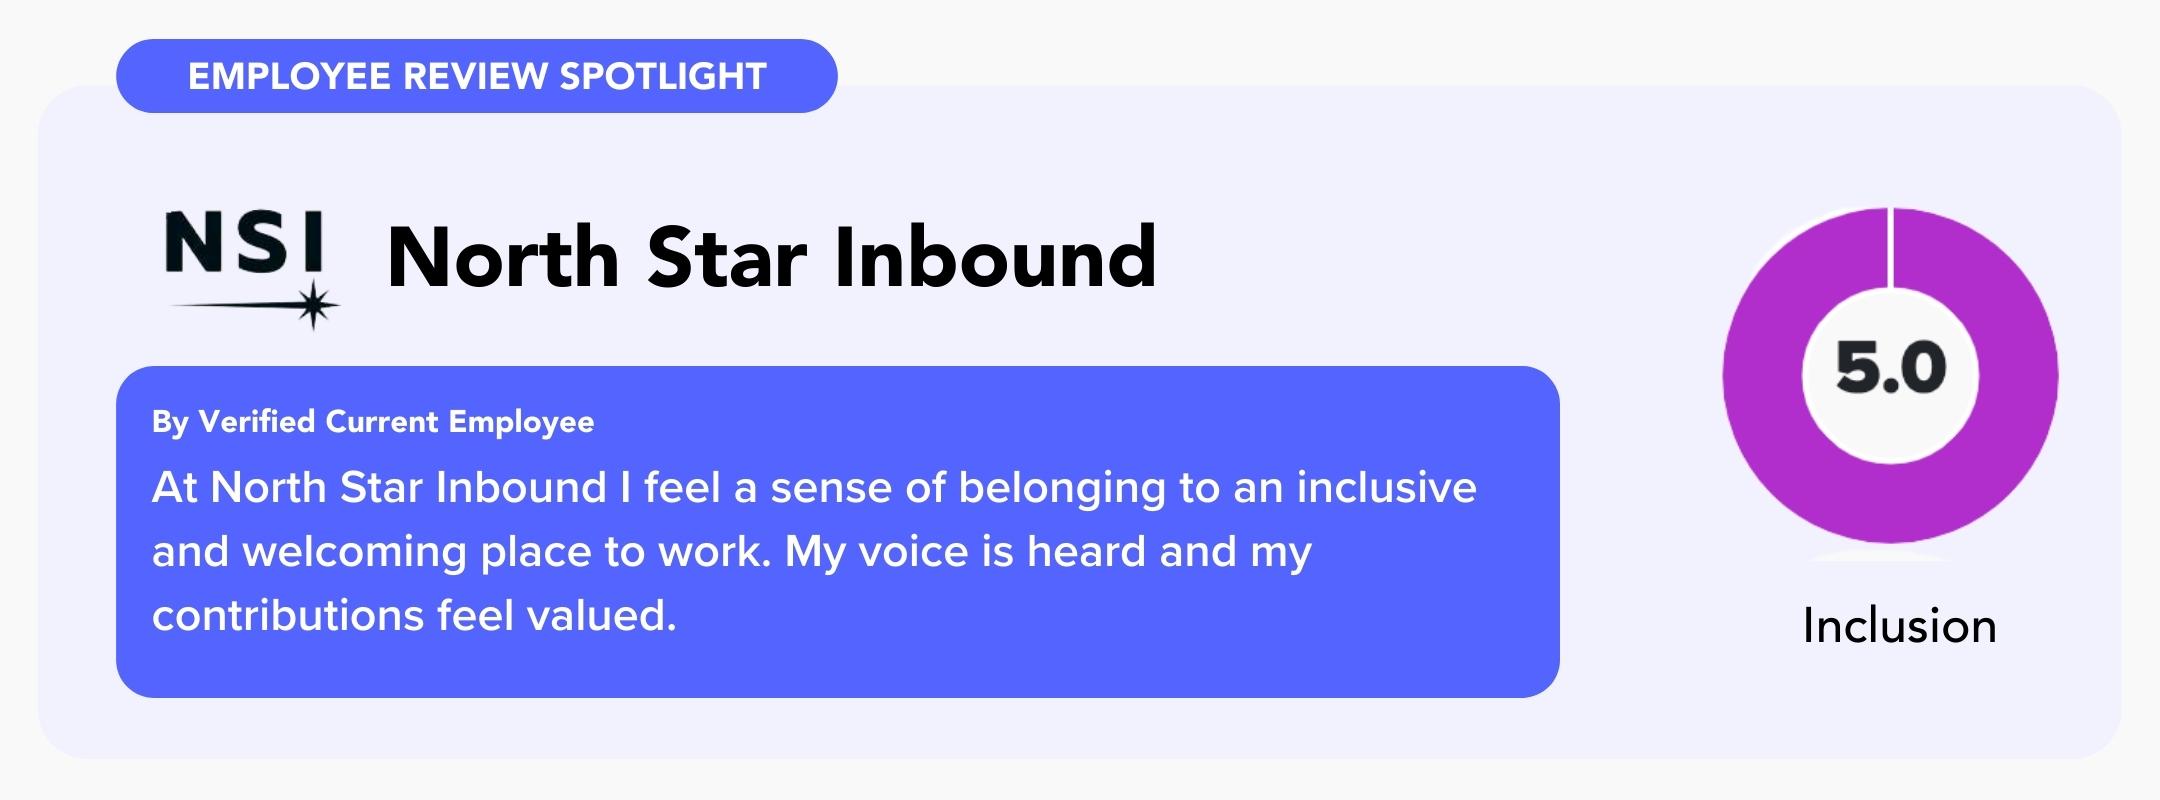 North Star Inbound employee review